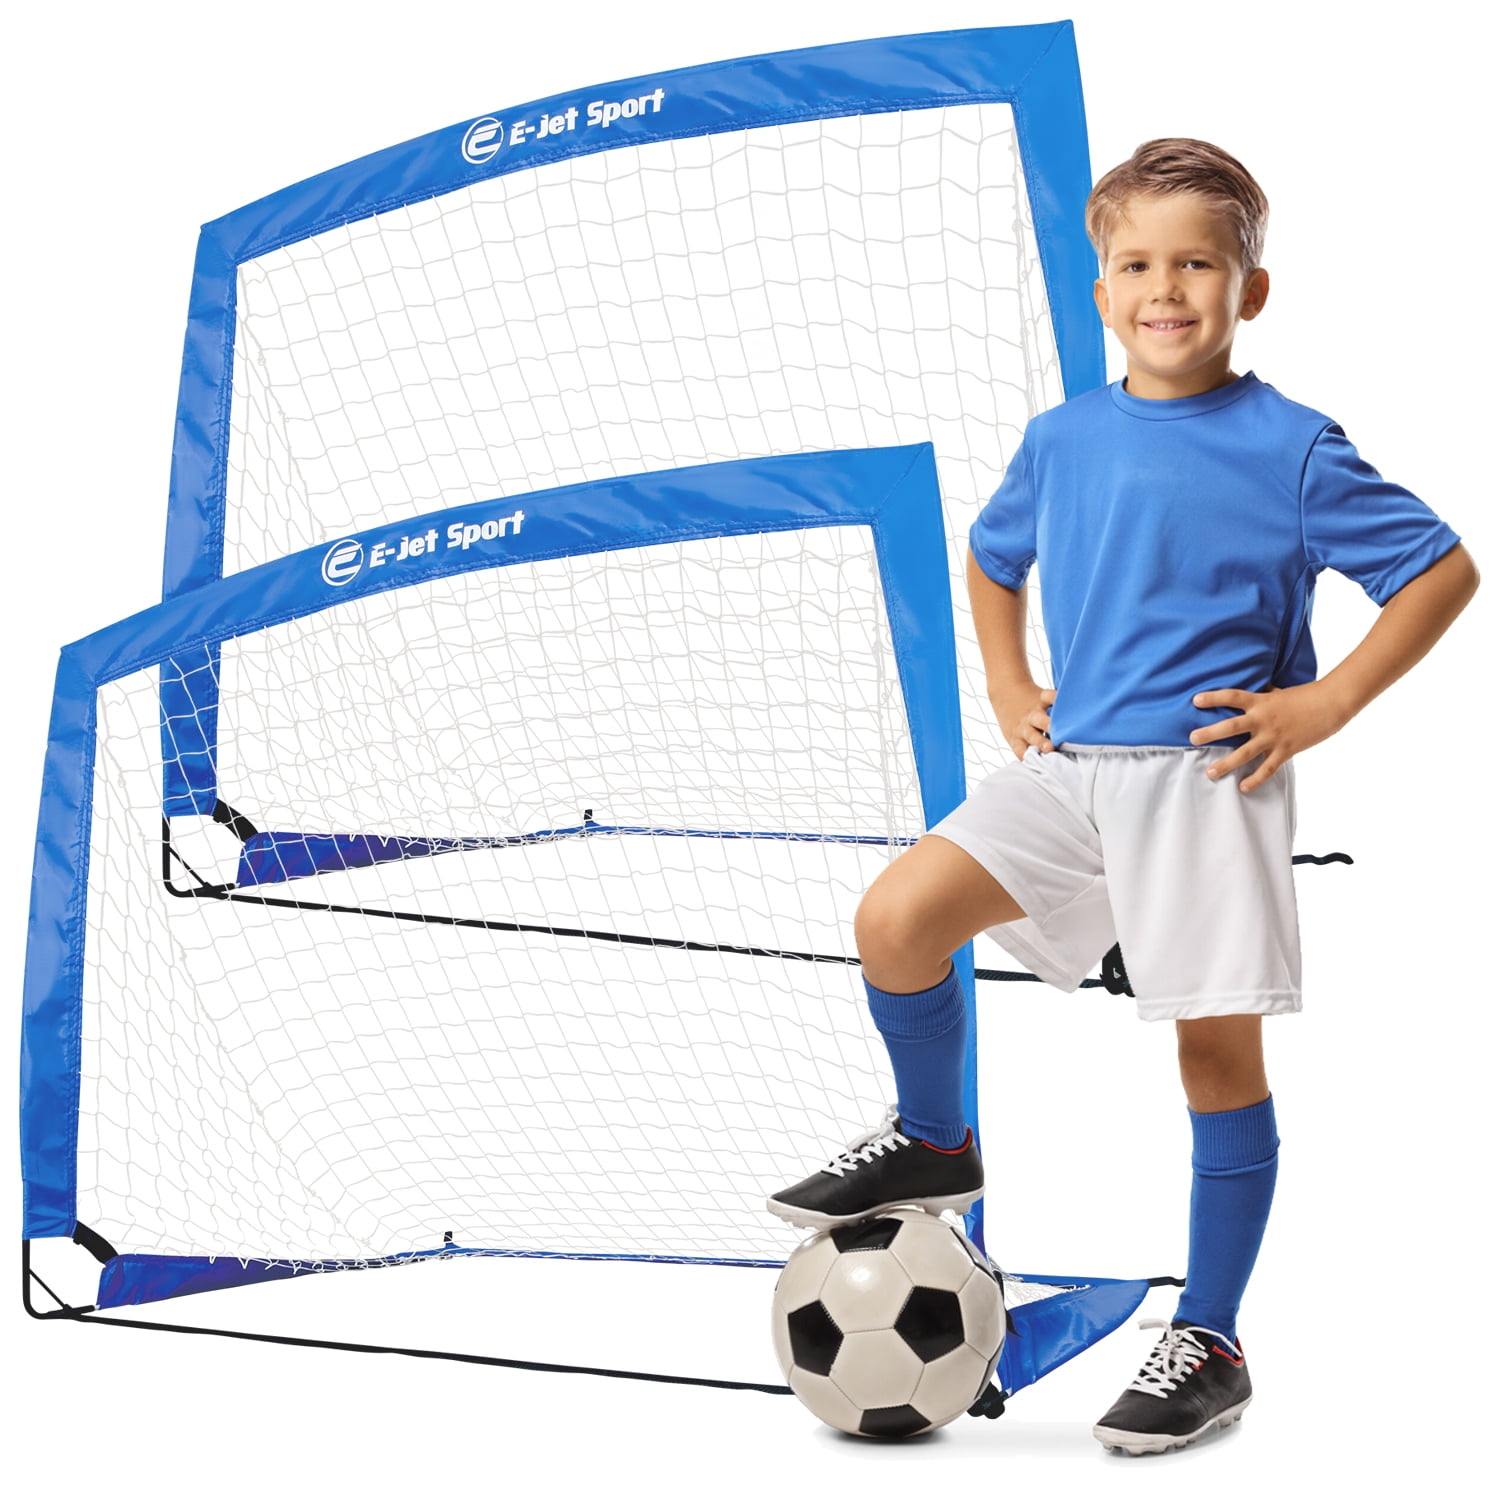 Kids Boy Soccer Goal W/Ball Kids Portable Net Backyard In/Outdoor Play Sports US 